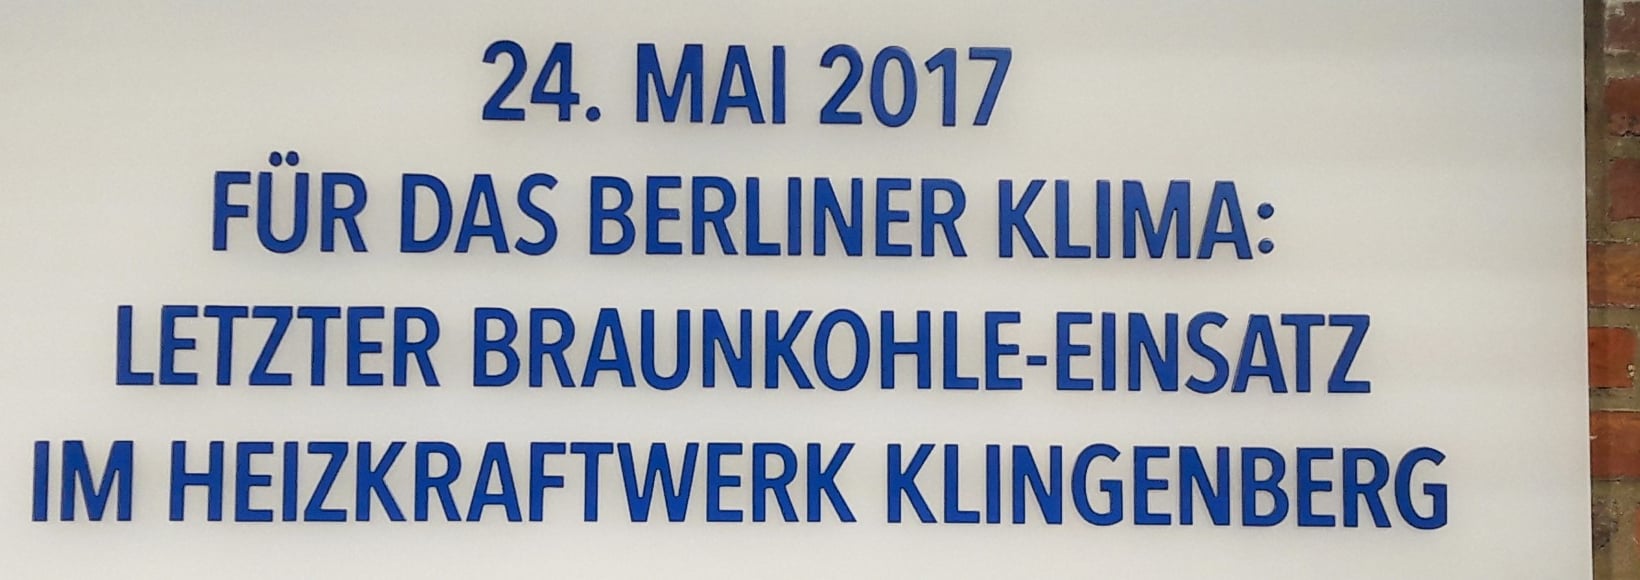 Tafel zum Braunkohleausstieg Klingenberg